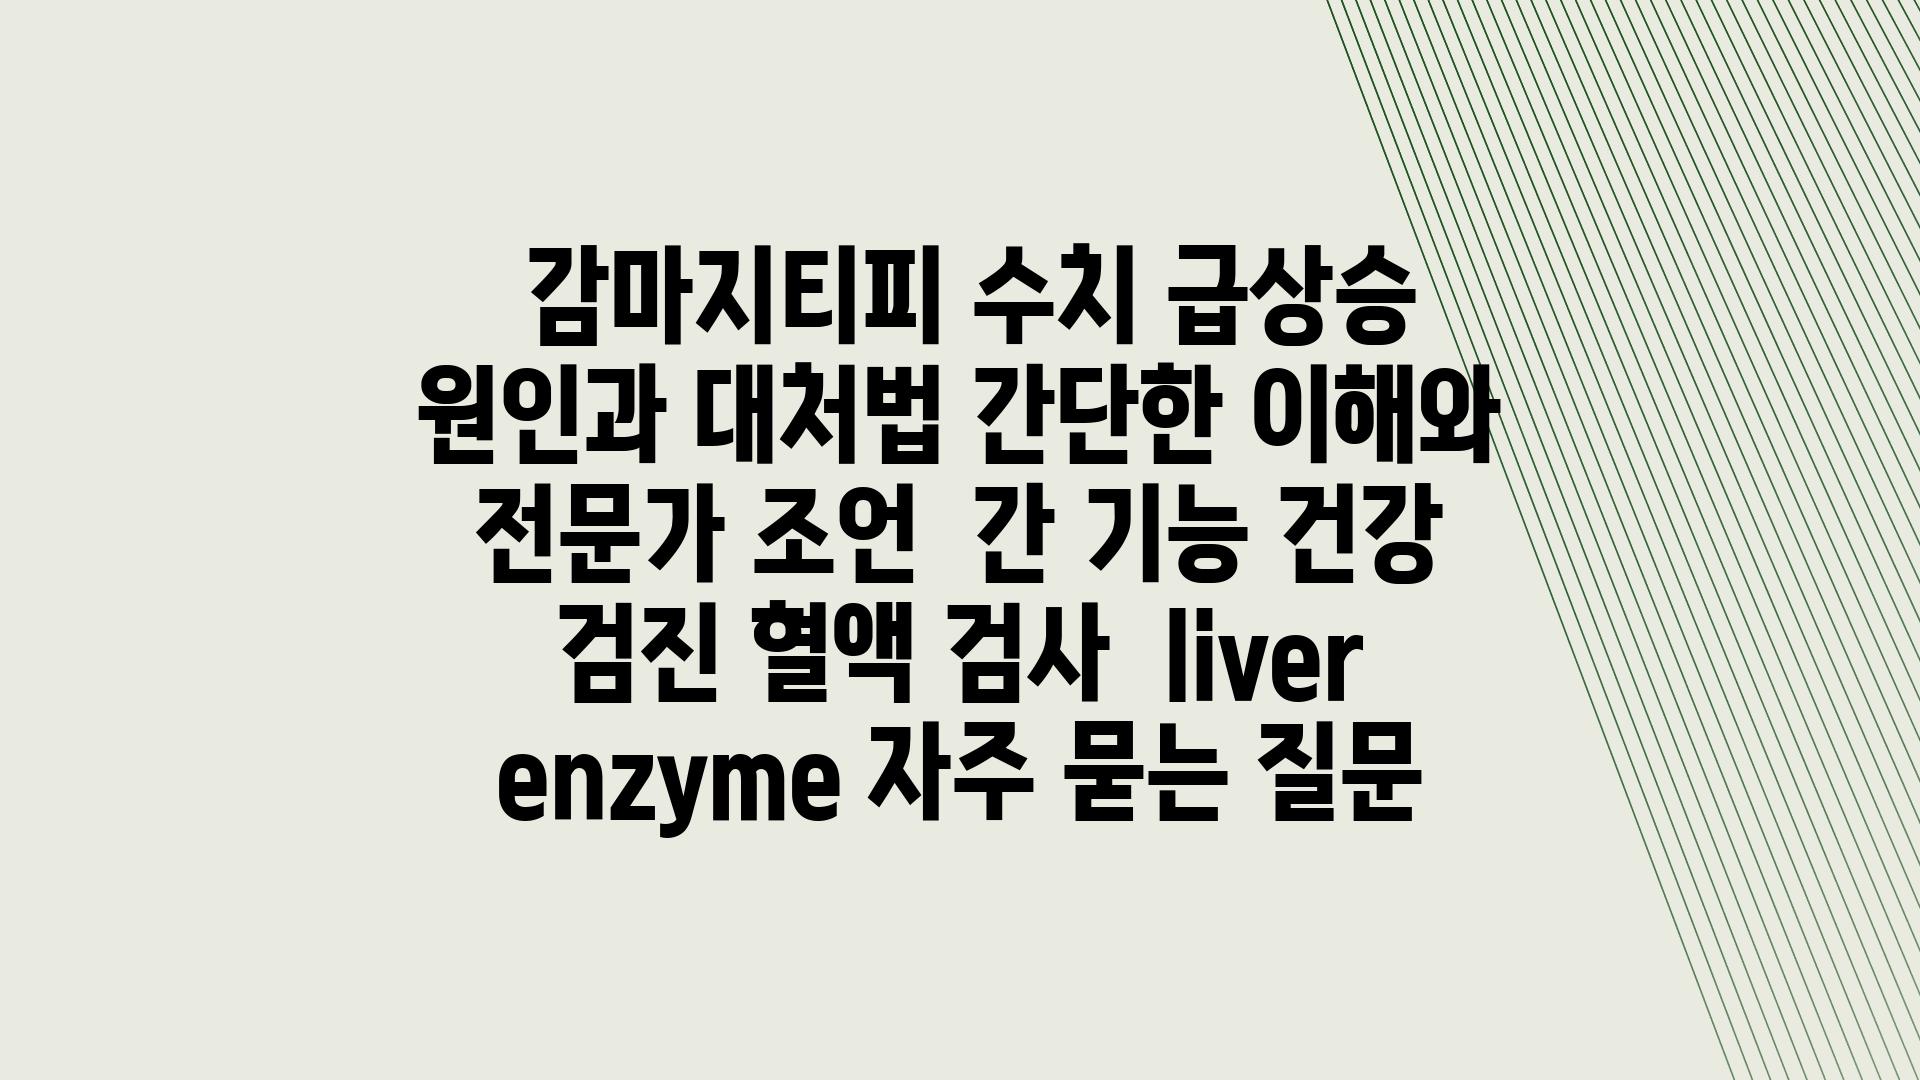  감마지티피 수치 급상승 원인과 대처법 간단한 이해와 전문가 조언  간 기능 건강 검진 혈액 검사  liver enzyme 자주 묻는 질문